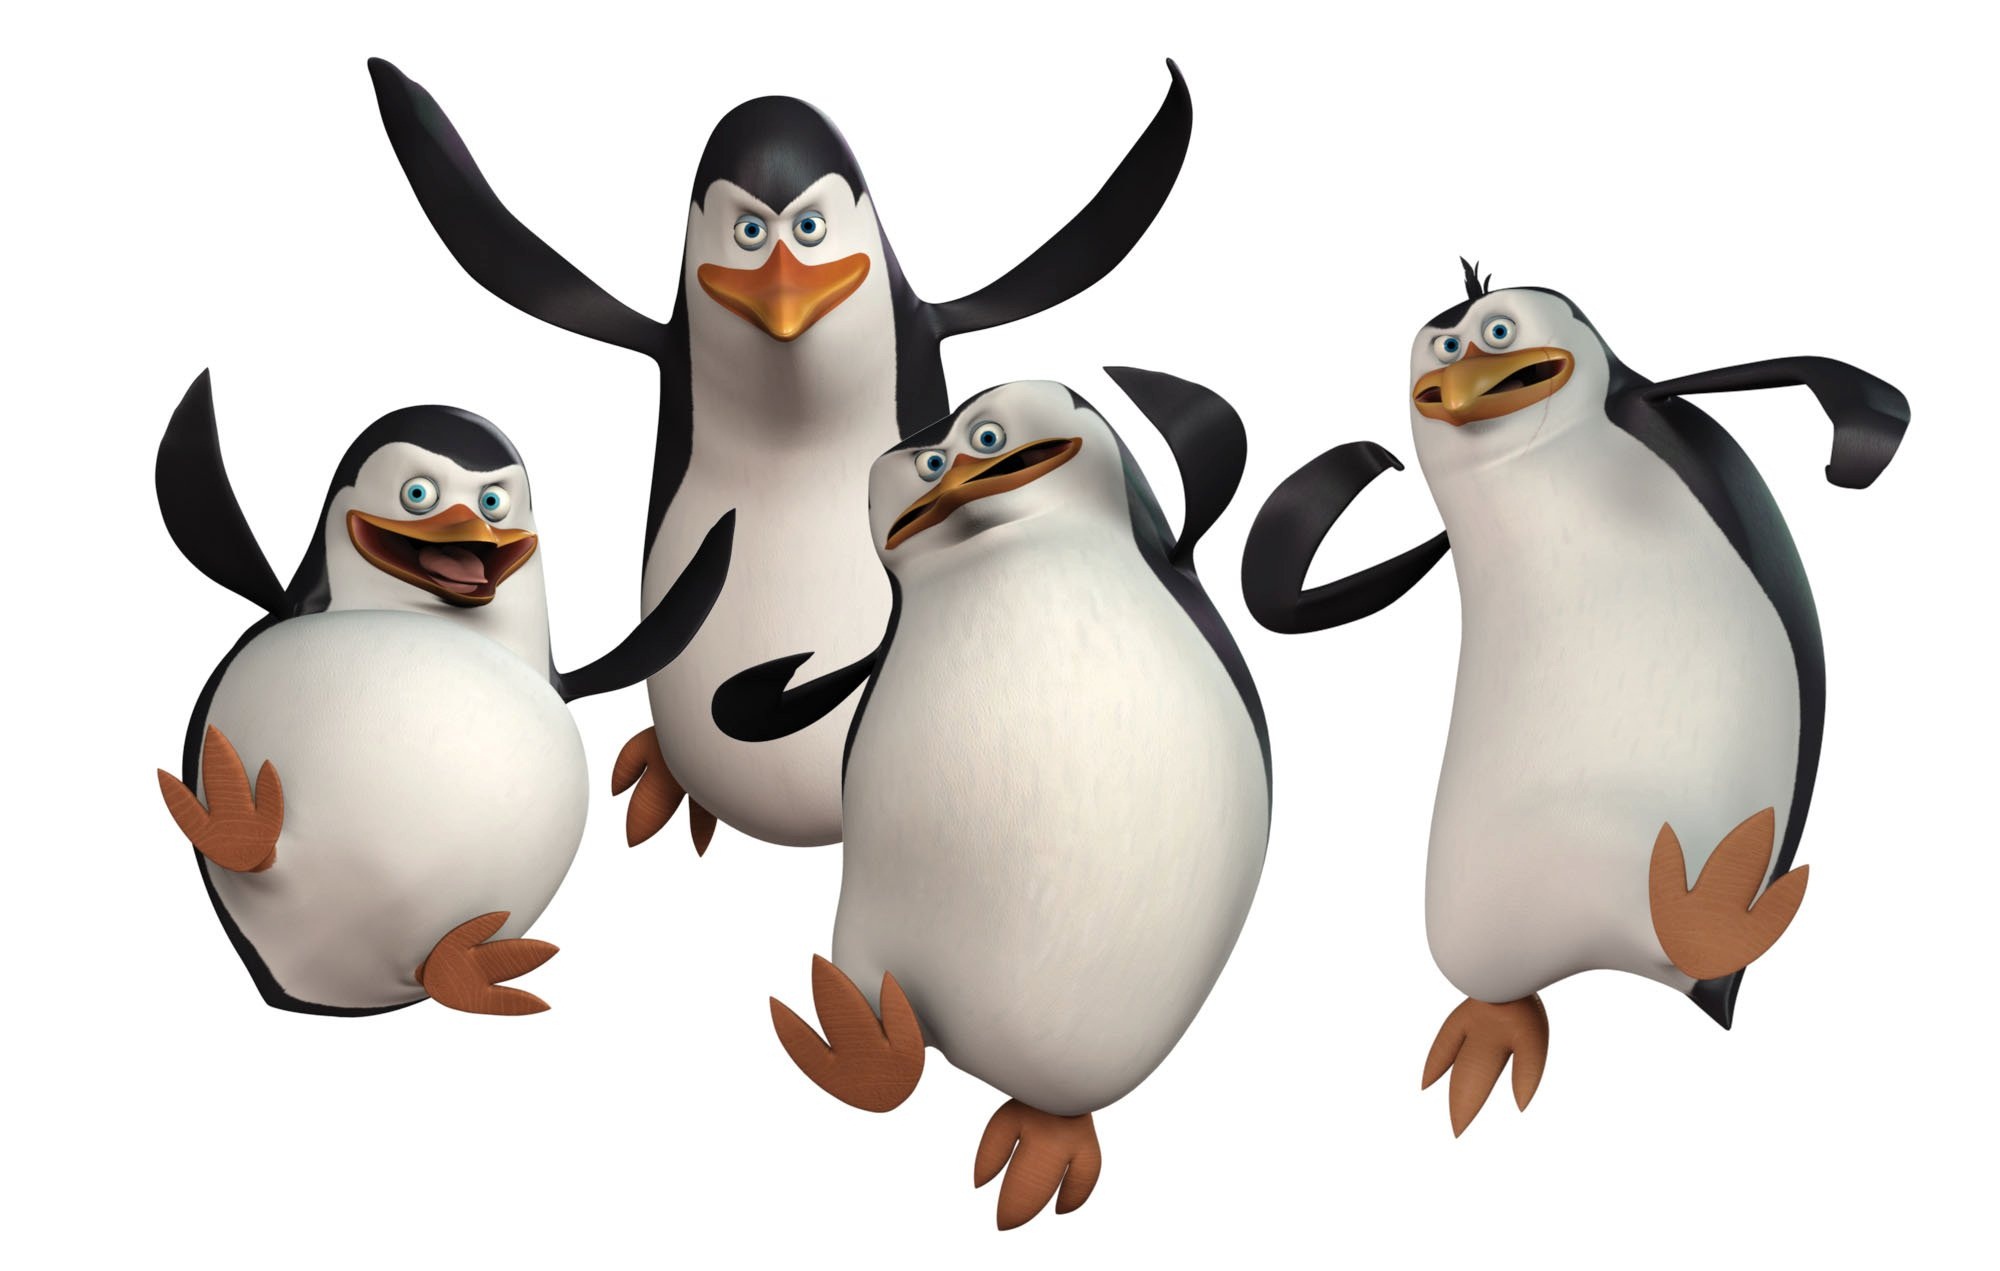 Пингвины Мадагаскара мультфильм 2014